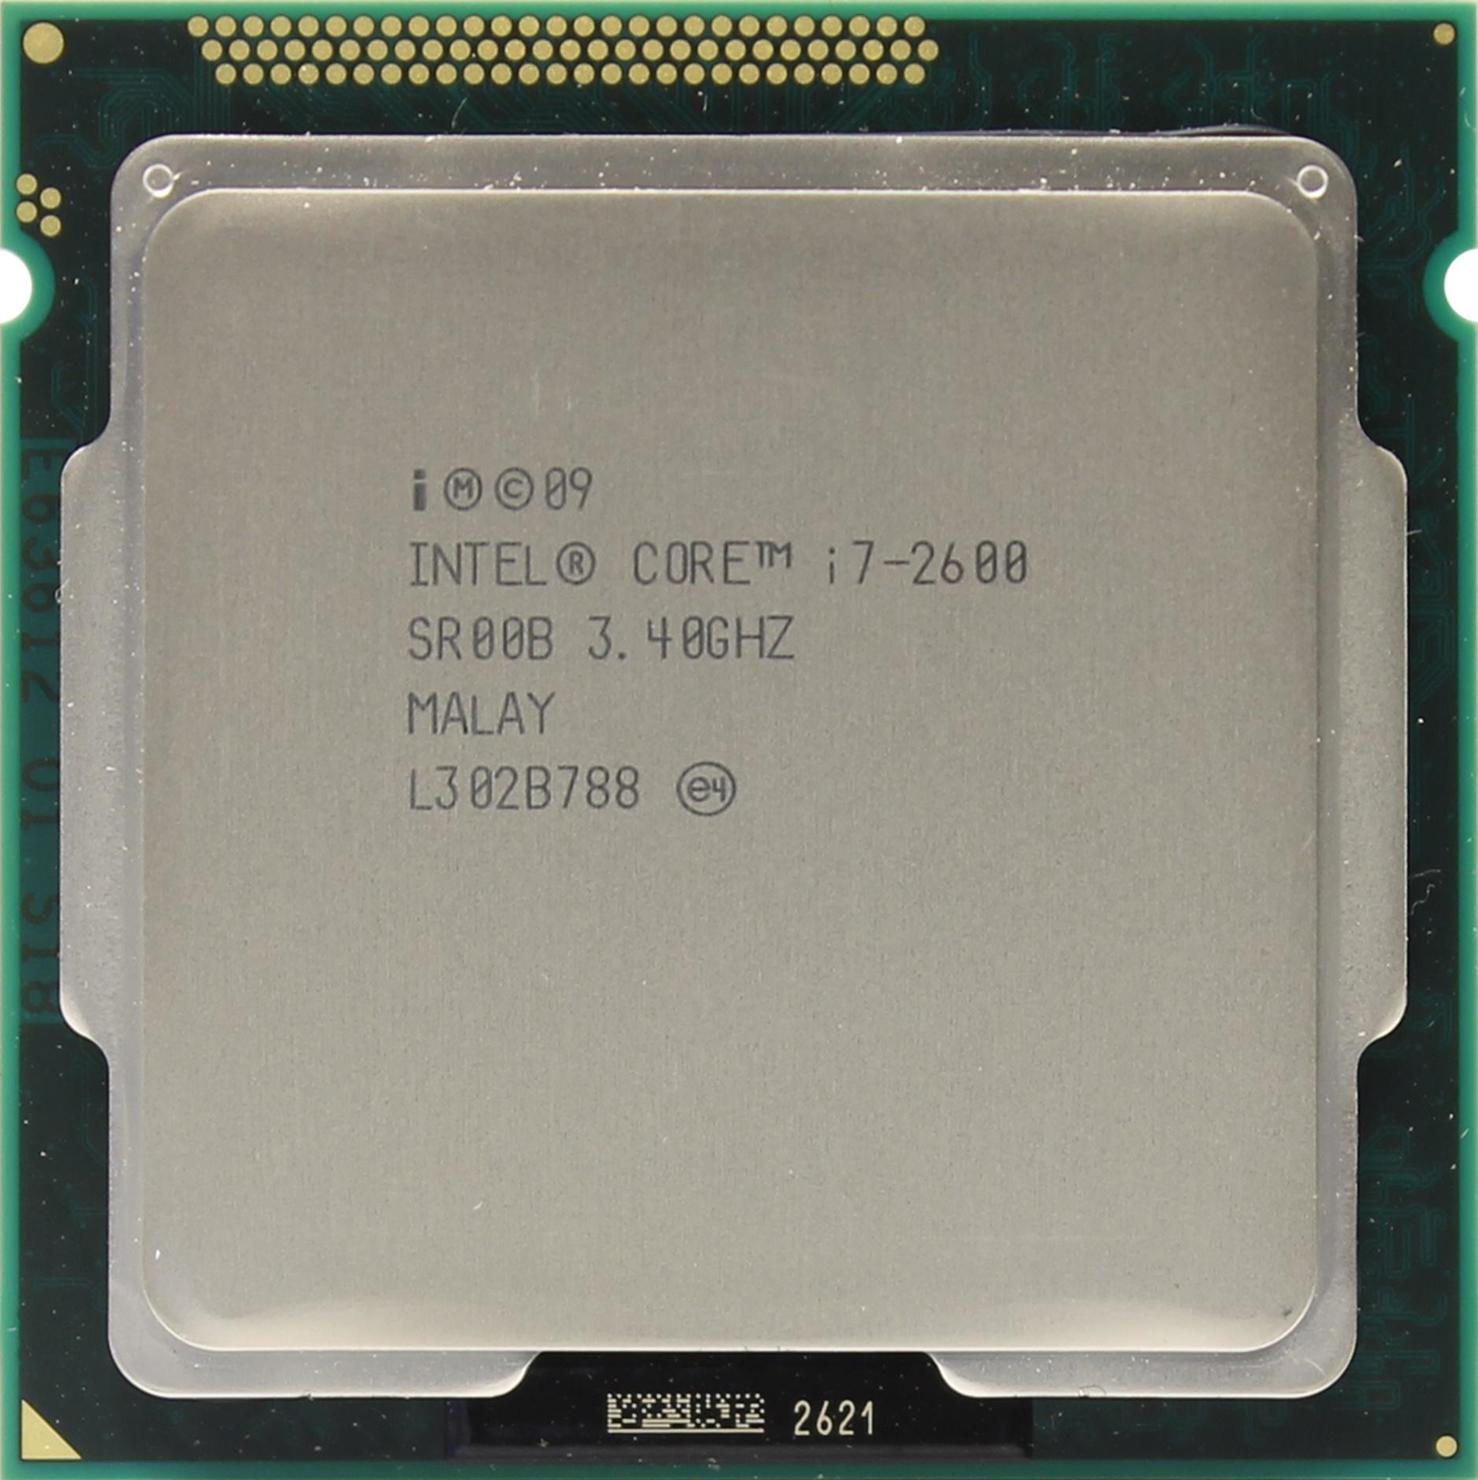 Купить Ноутбук Intel Core I7 2600k